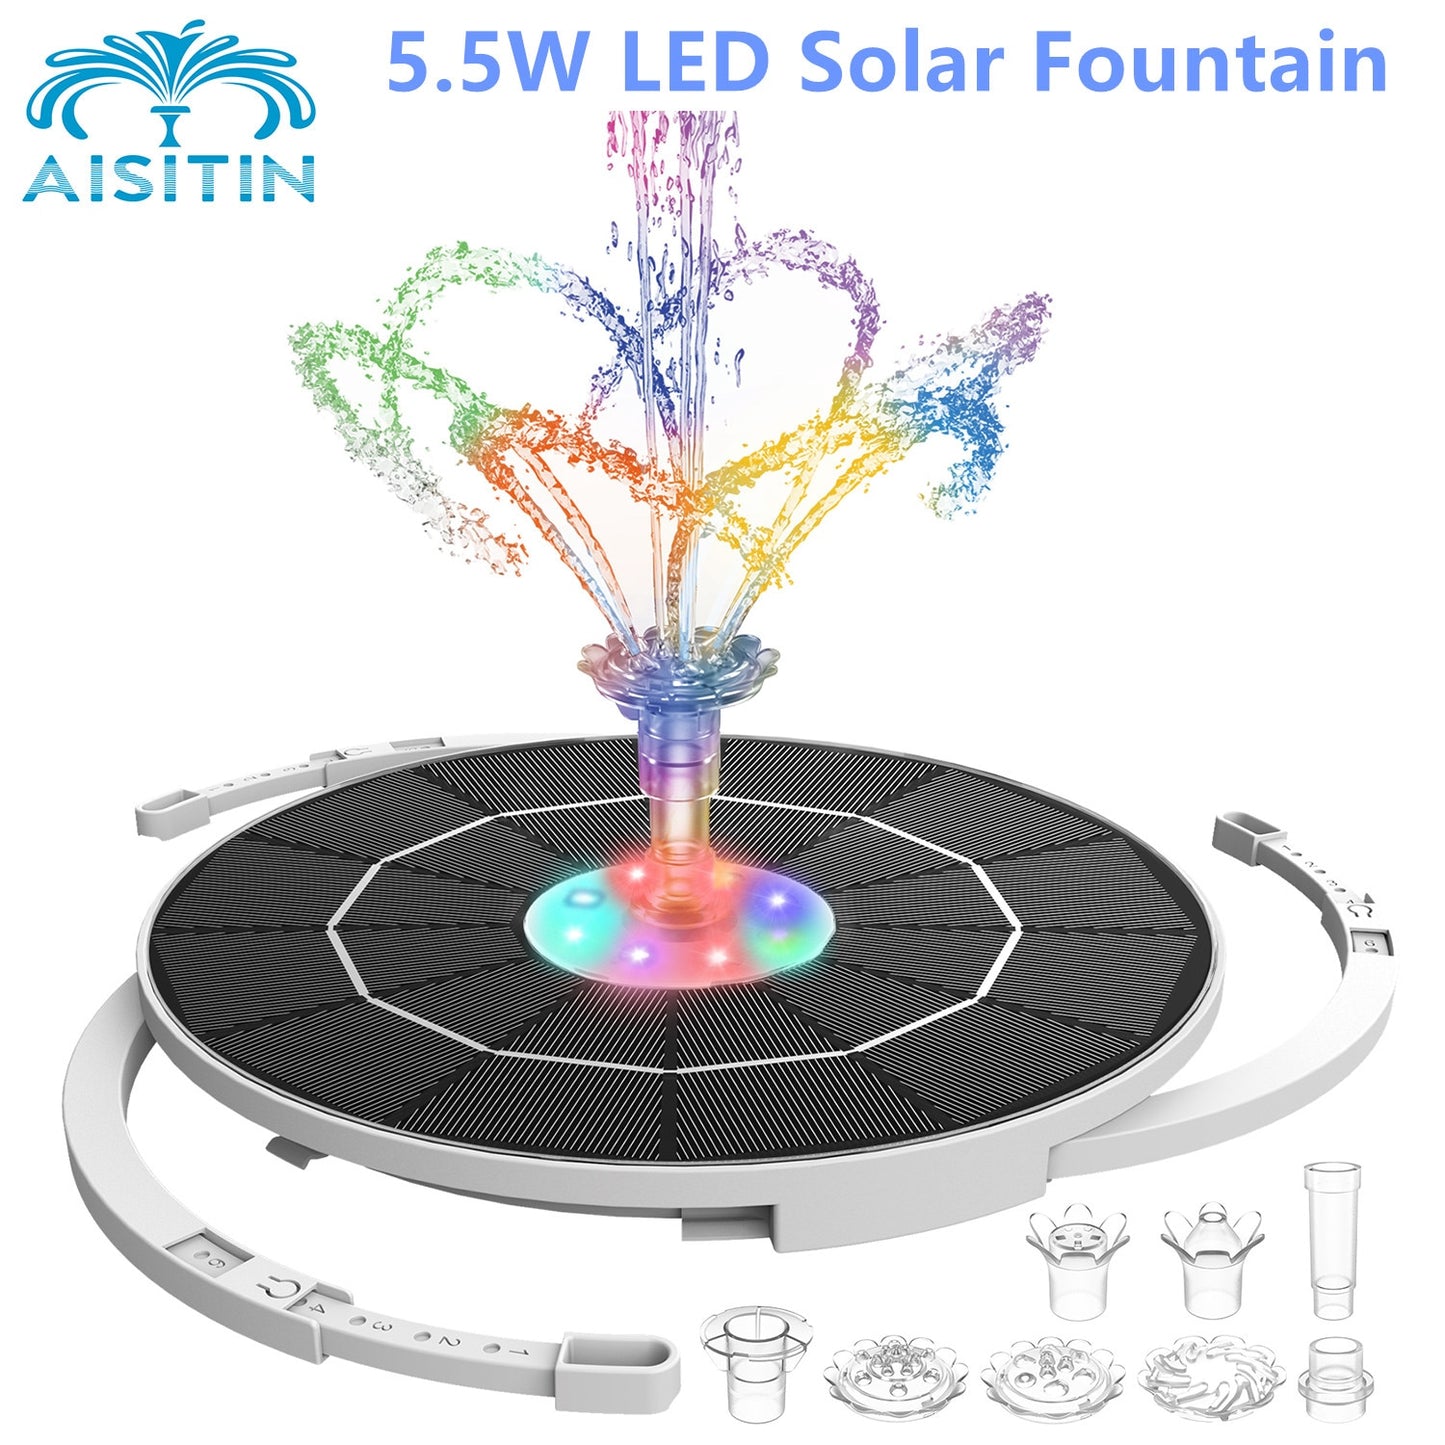 5.5W LED Solar Fountain AISITIN 7f